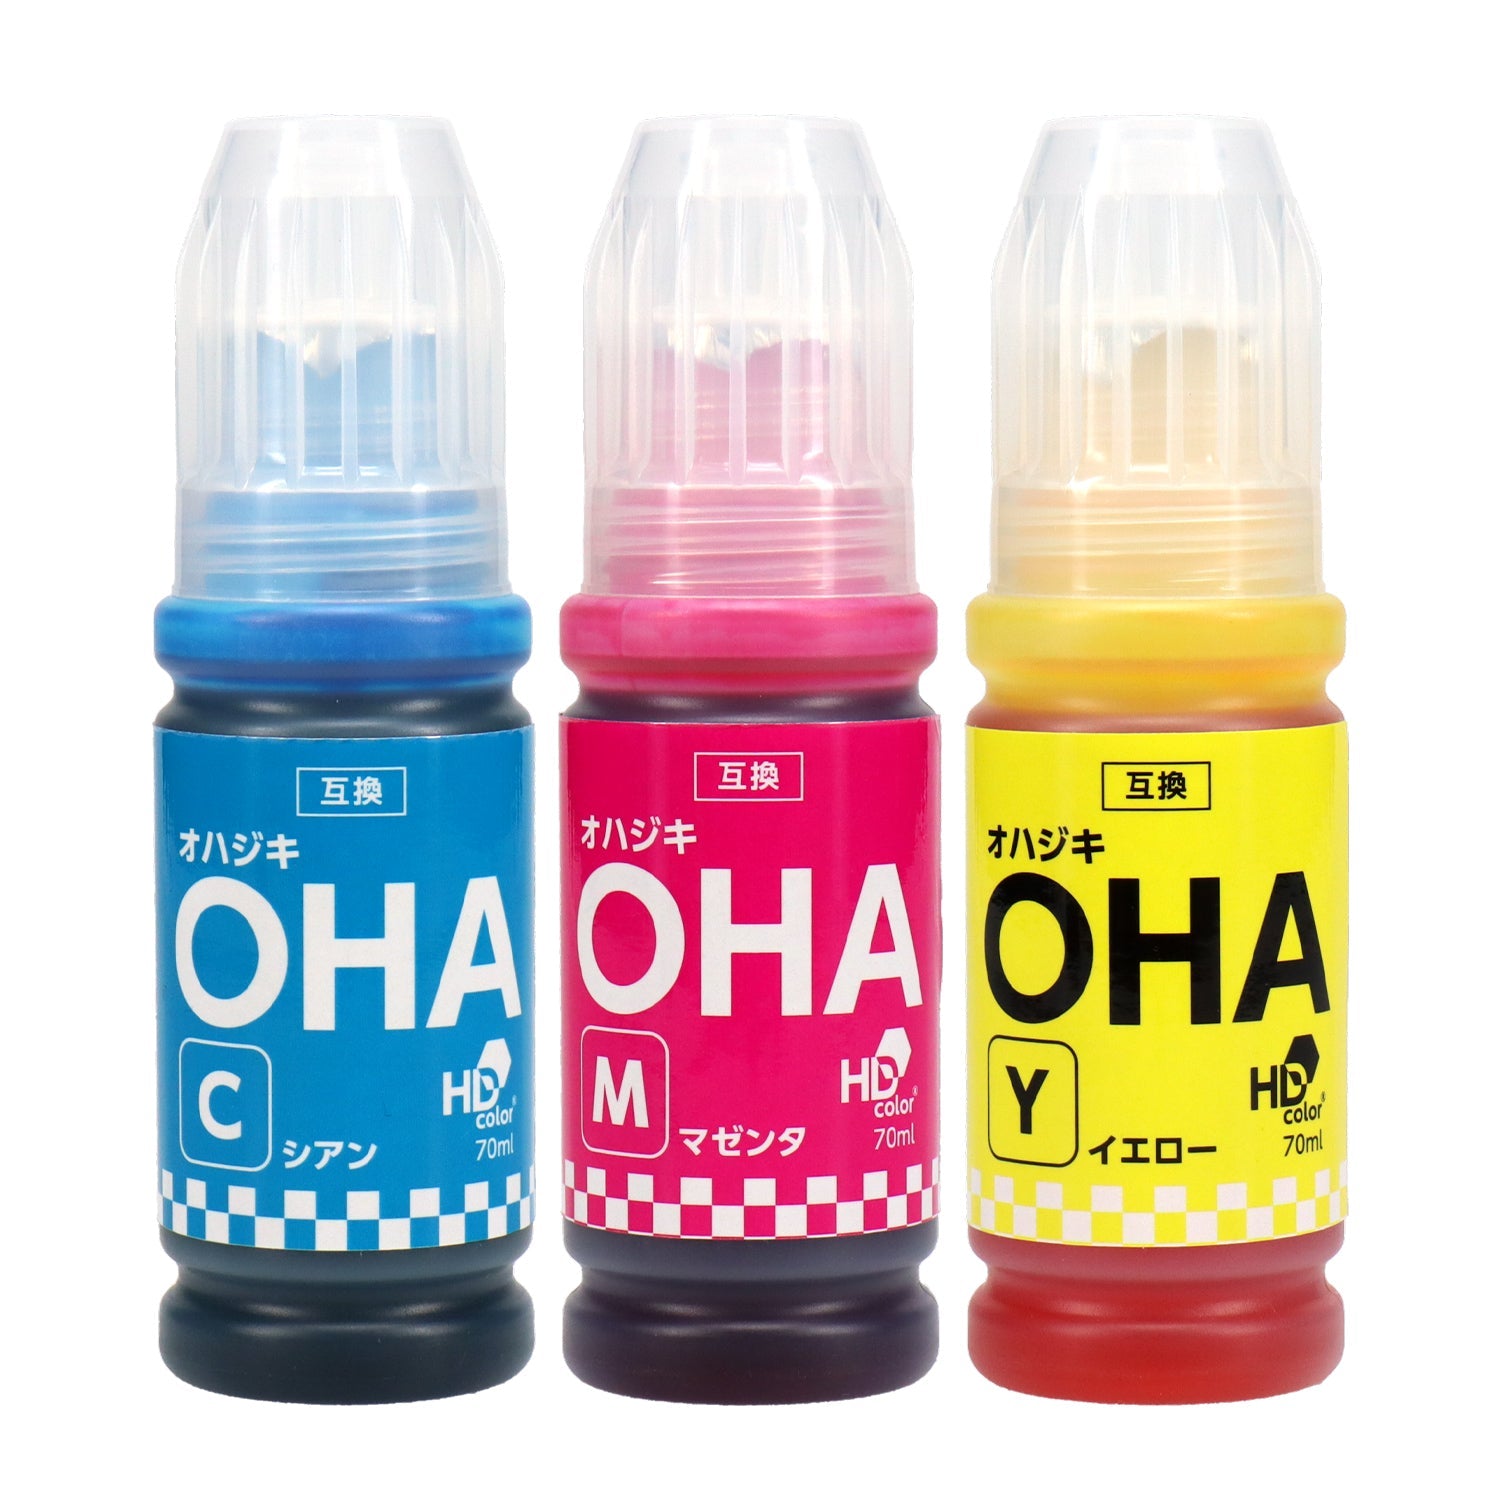 エプソン OHA エプソン用 互換インクボトル 選べる6個セット EP-M476T対応 OHA-BK OHA-C OHA-M OHA-Y 目印 オハジキ